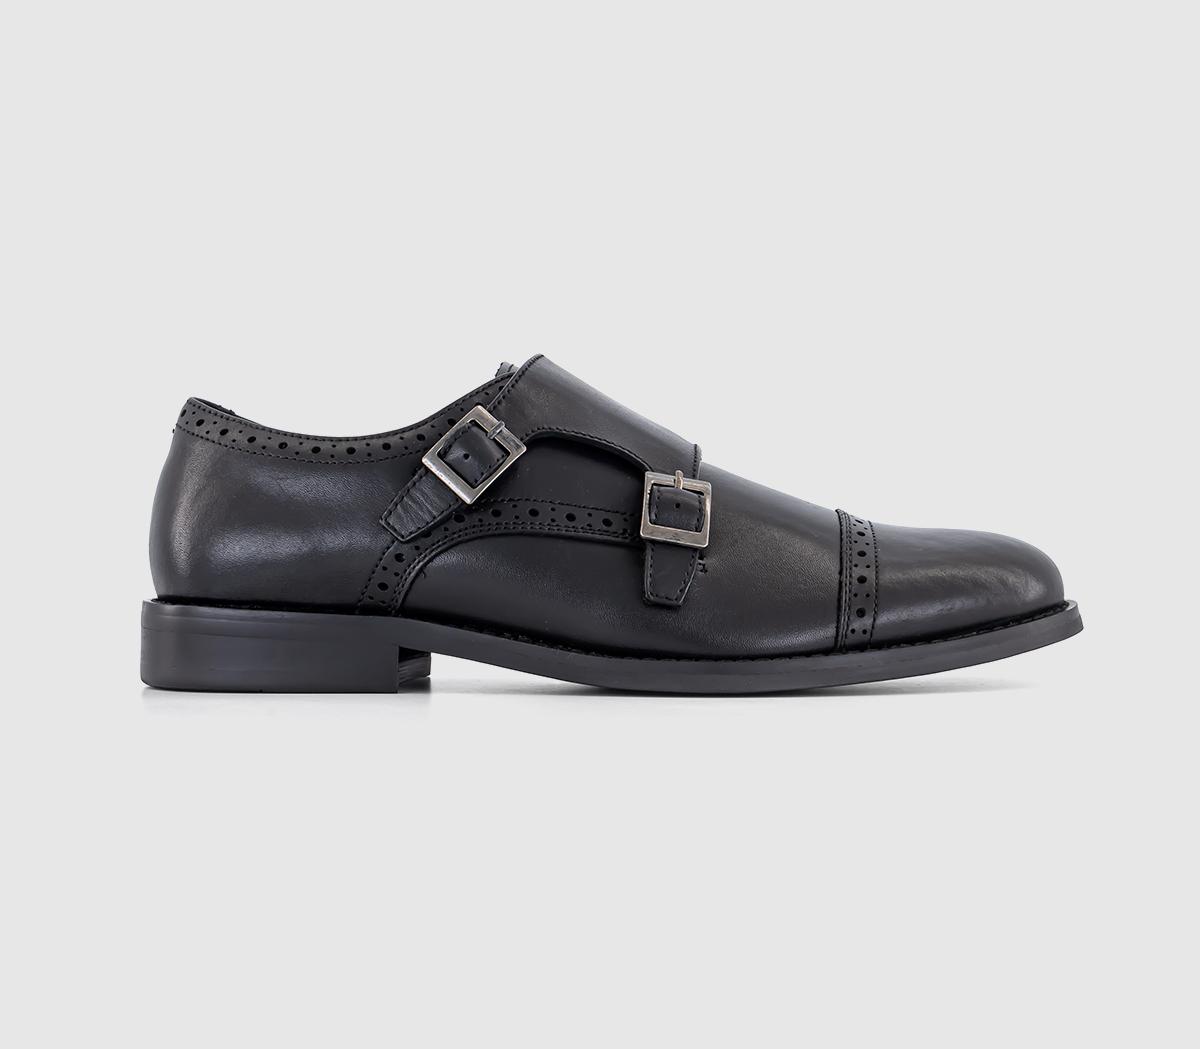 OFFICE Myles Double Strap Monk Shoes Black Leather - Men’s Smart Shoes